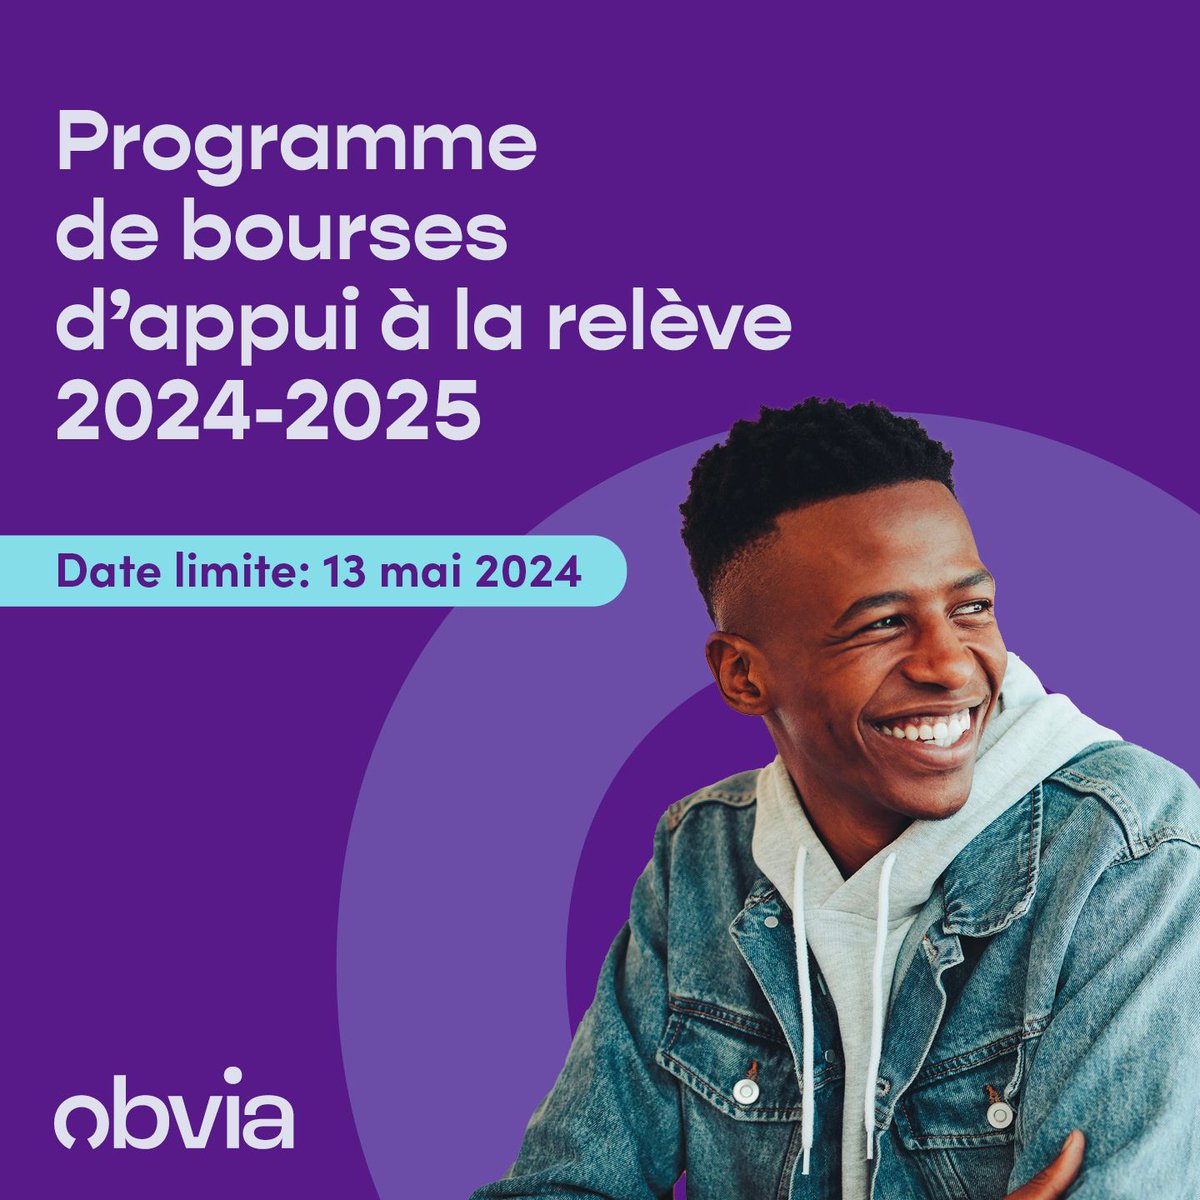 🌟 Ouverture du programme de Bourses d’appui à la relève 2024-2025 🌟 👉 Postulez dès maintenant ➡️ buff.ly/3PVLNnB